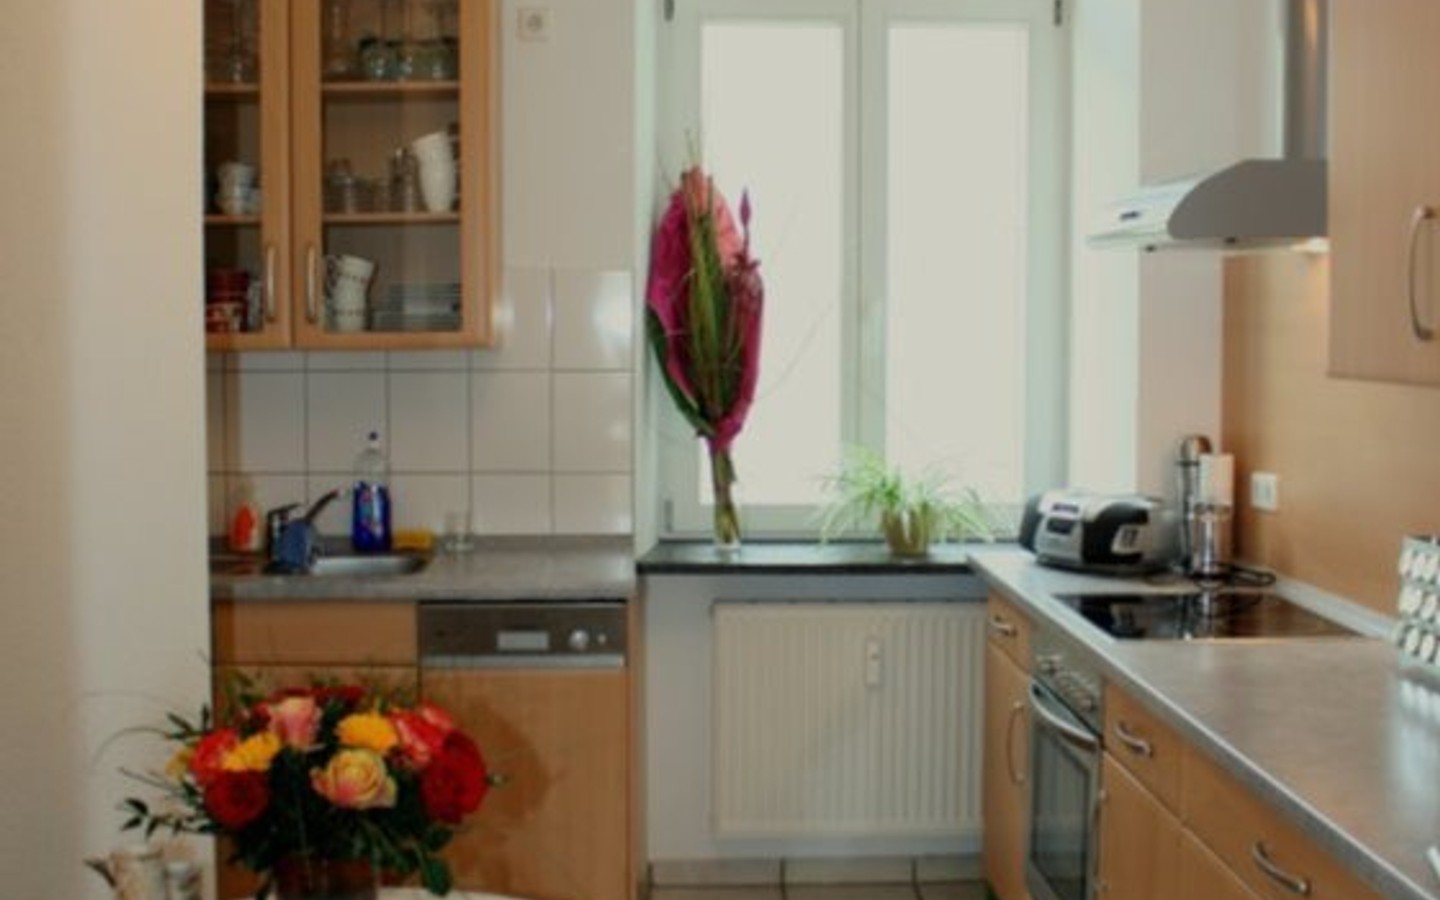 Küche - Sehr ansprechende Vierzimmerwohnung in einem Stadthaus in zentralster Lage von Heidelberg